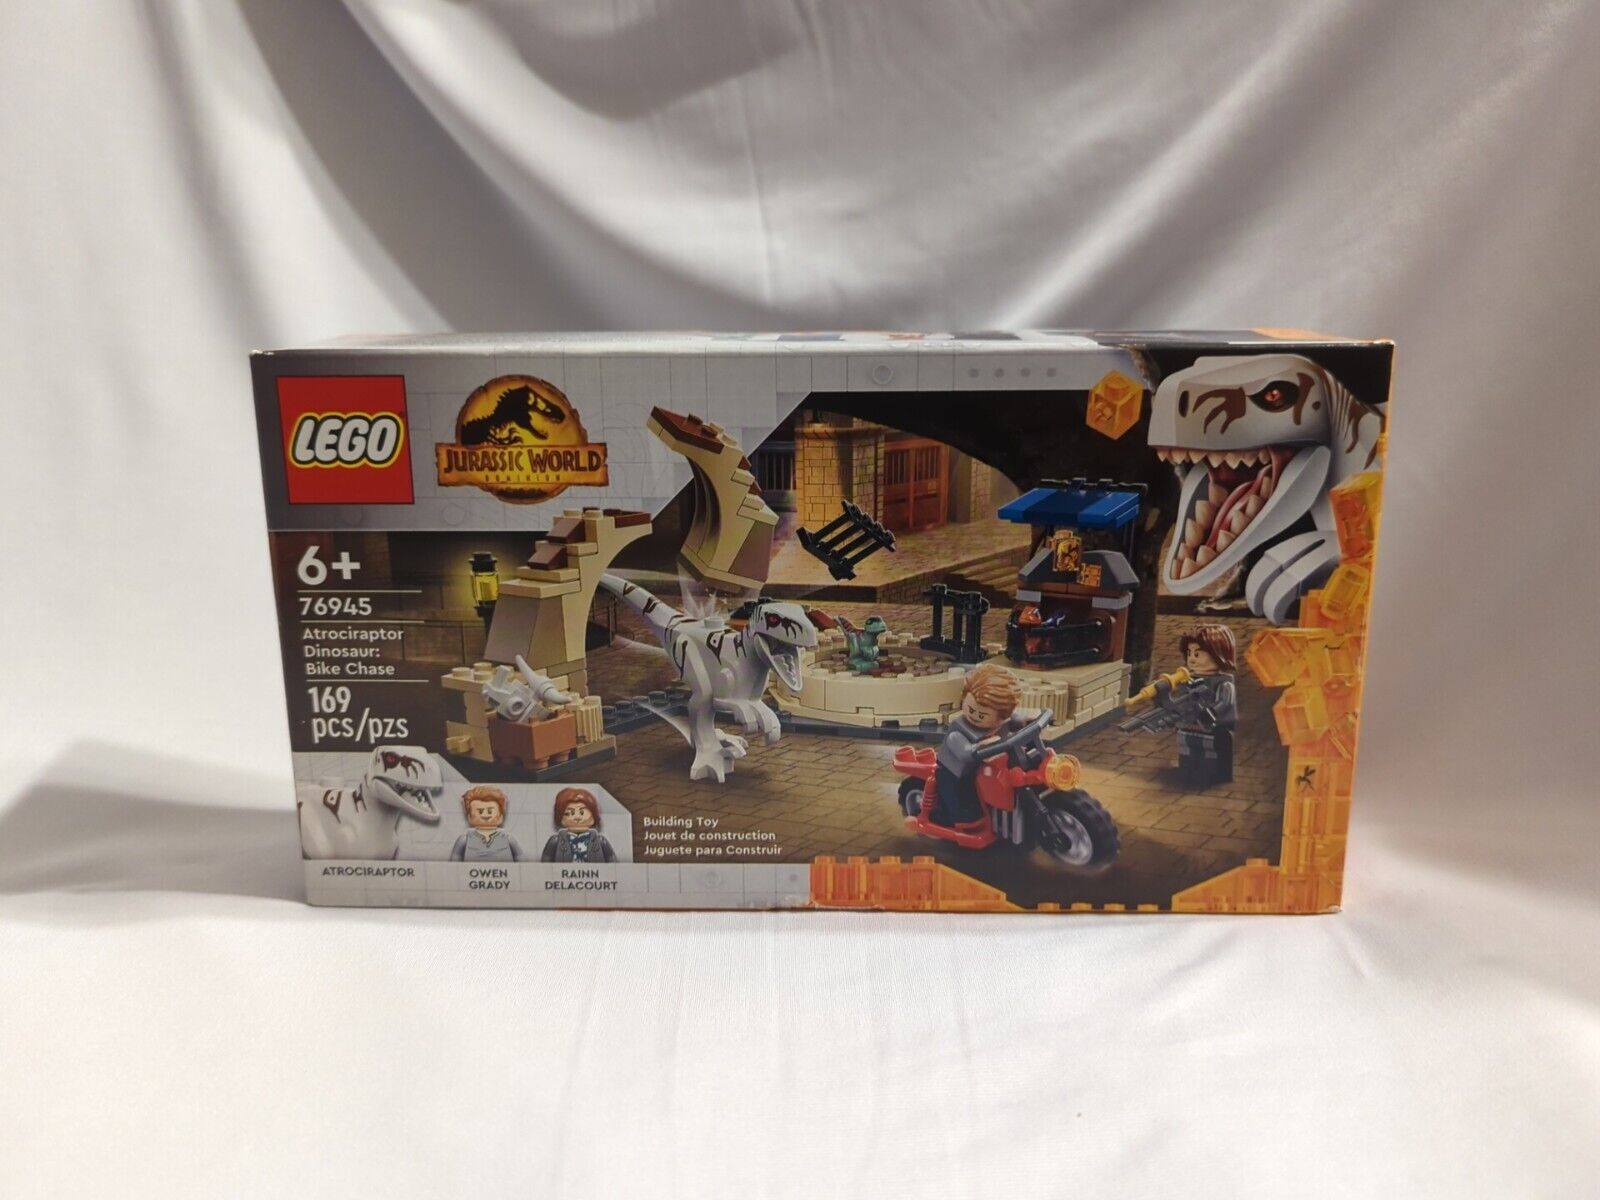 LEGO Jurassic World Dominion Atrociraptor Dinosaur: Bike Chase,#76945 NEW IN BOX